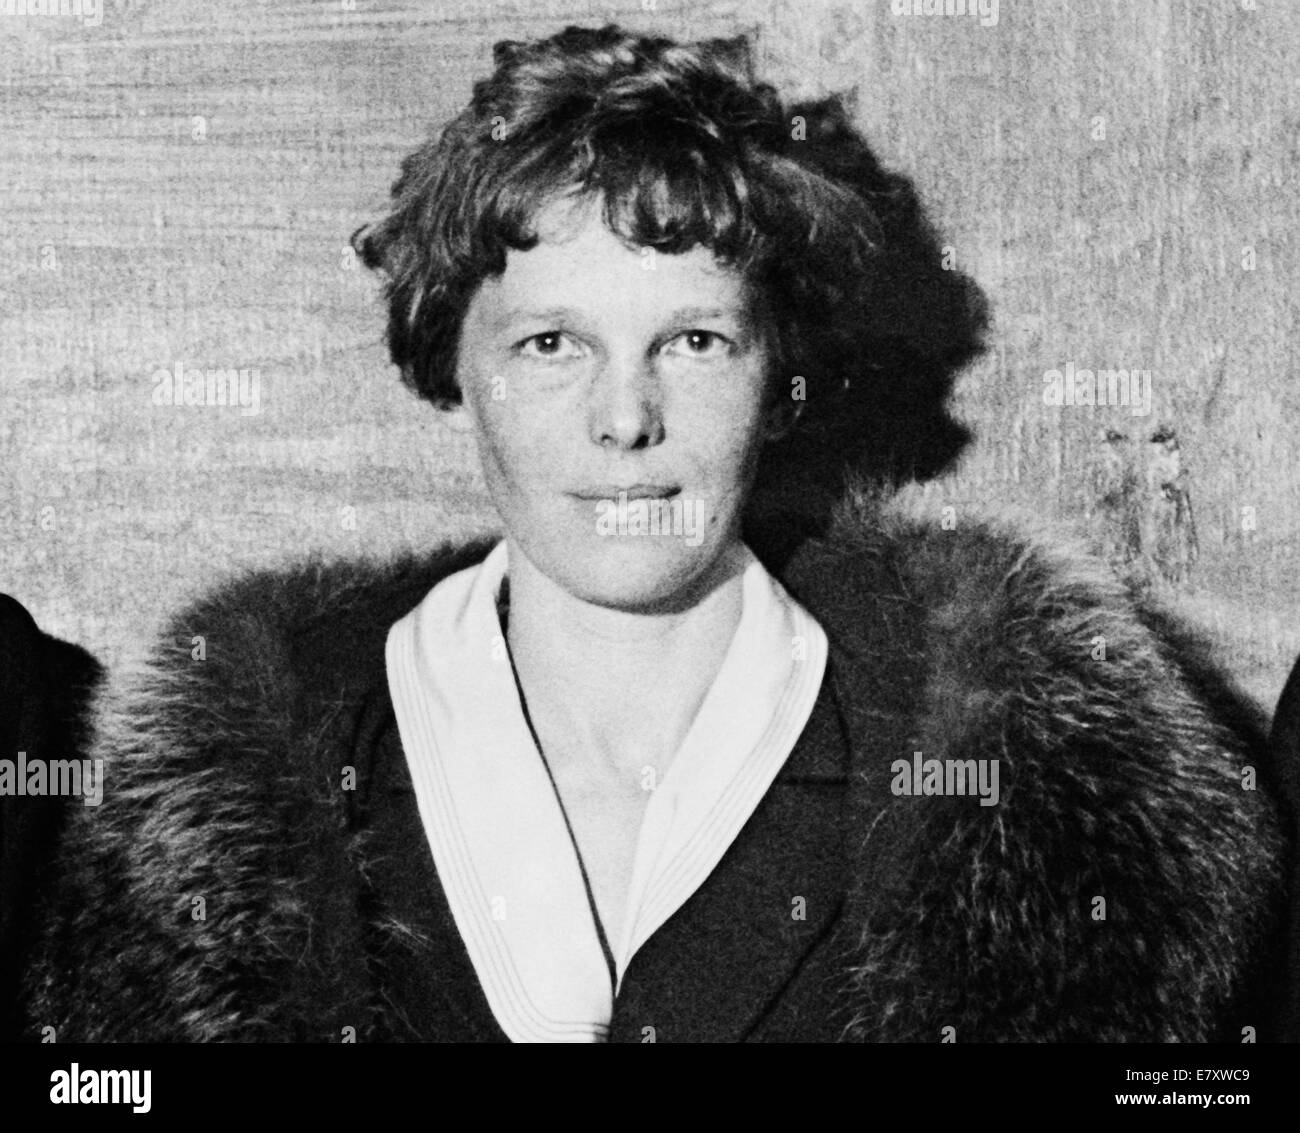 Vintage-Foto der amerikanischen Luftfahrtpionierin und Autorin Amelia Earhart (1897 – 1939 für tot erklärt) – Earhart und ihr Navigator Fred Noonan verschwanden 1937 bekanntermaßen, als sie versuchte, das erste Weibchen zu werden, das einen Rundflug über den Globus absolvierte. Foto aus dem Jahr 1932. Stockfoto